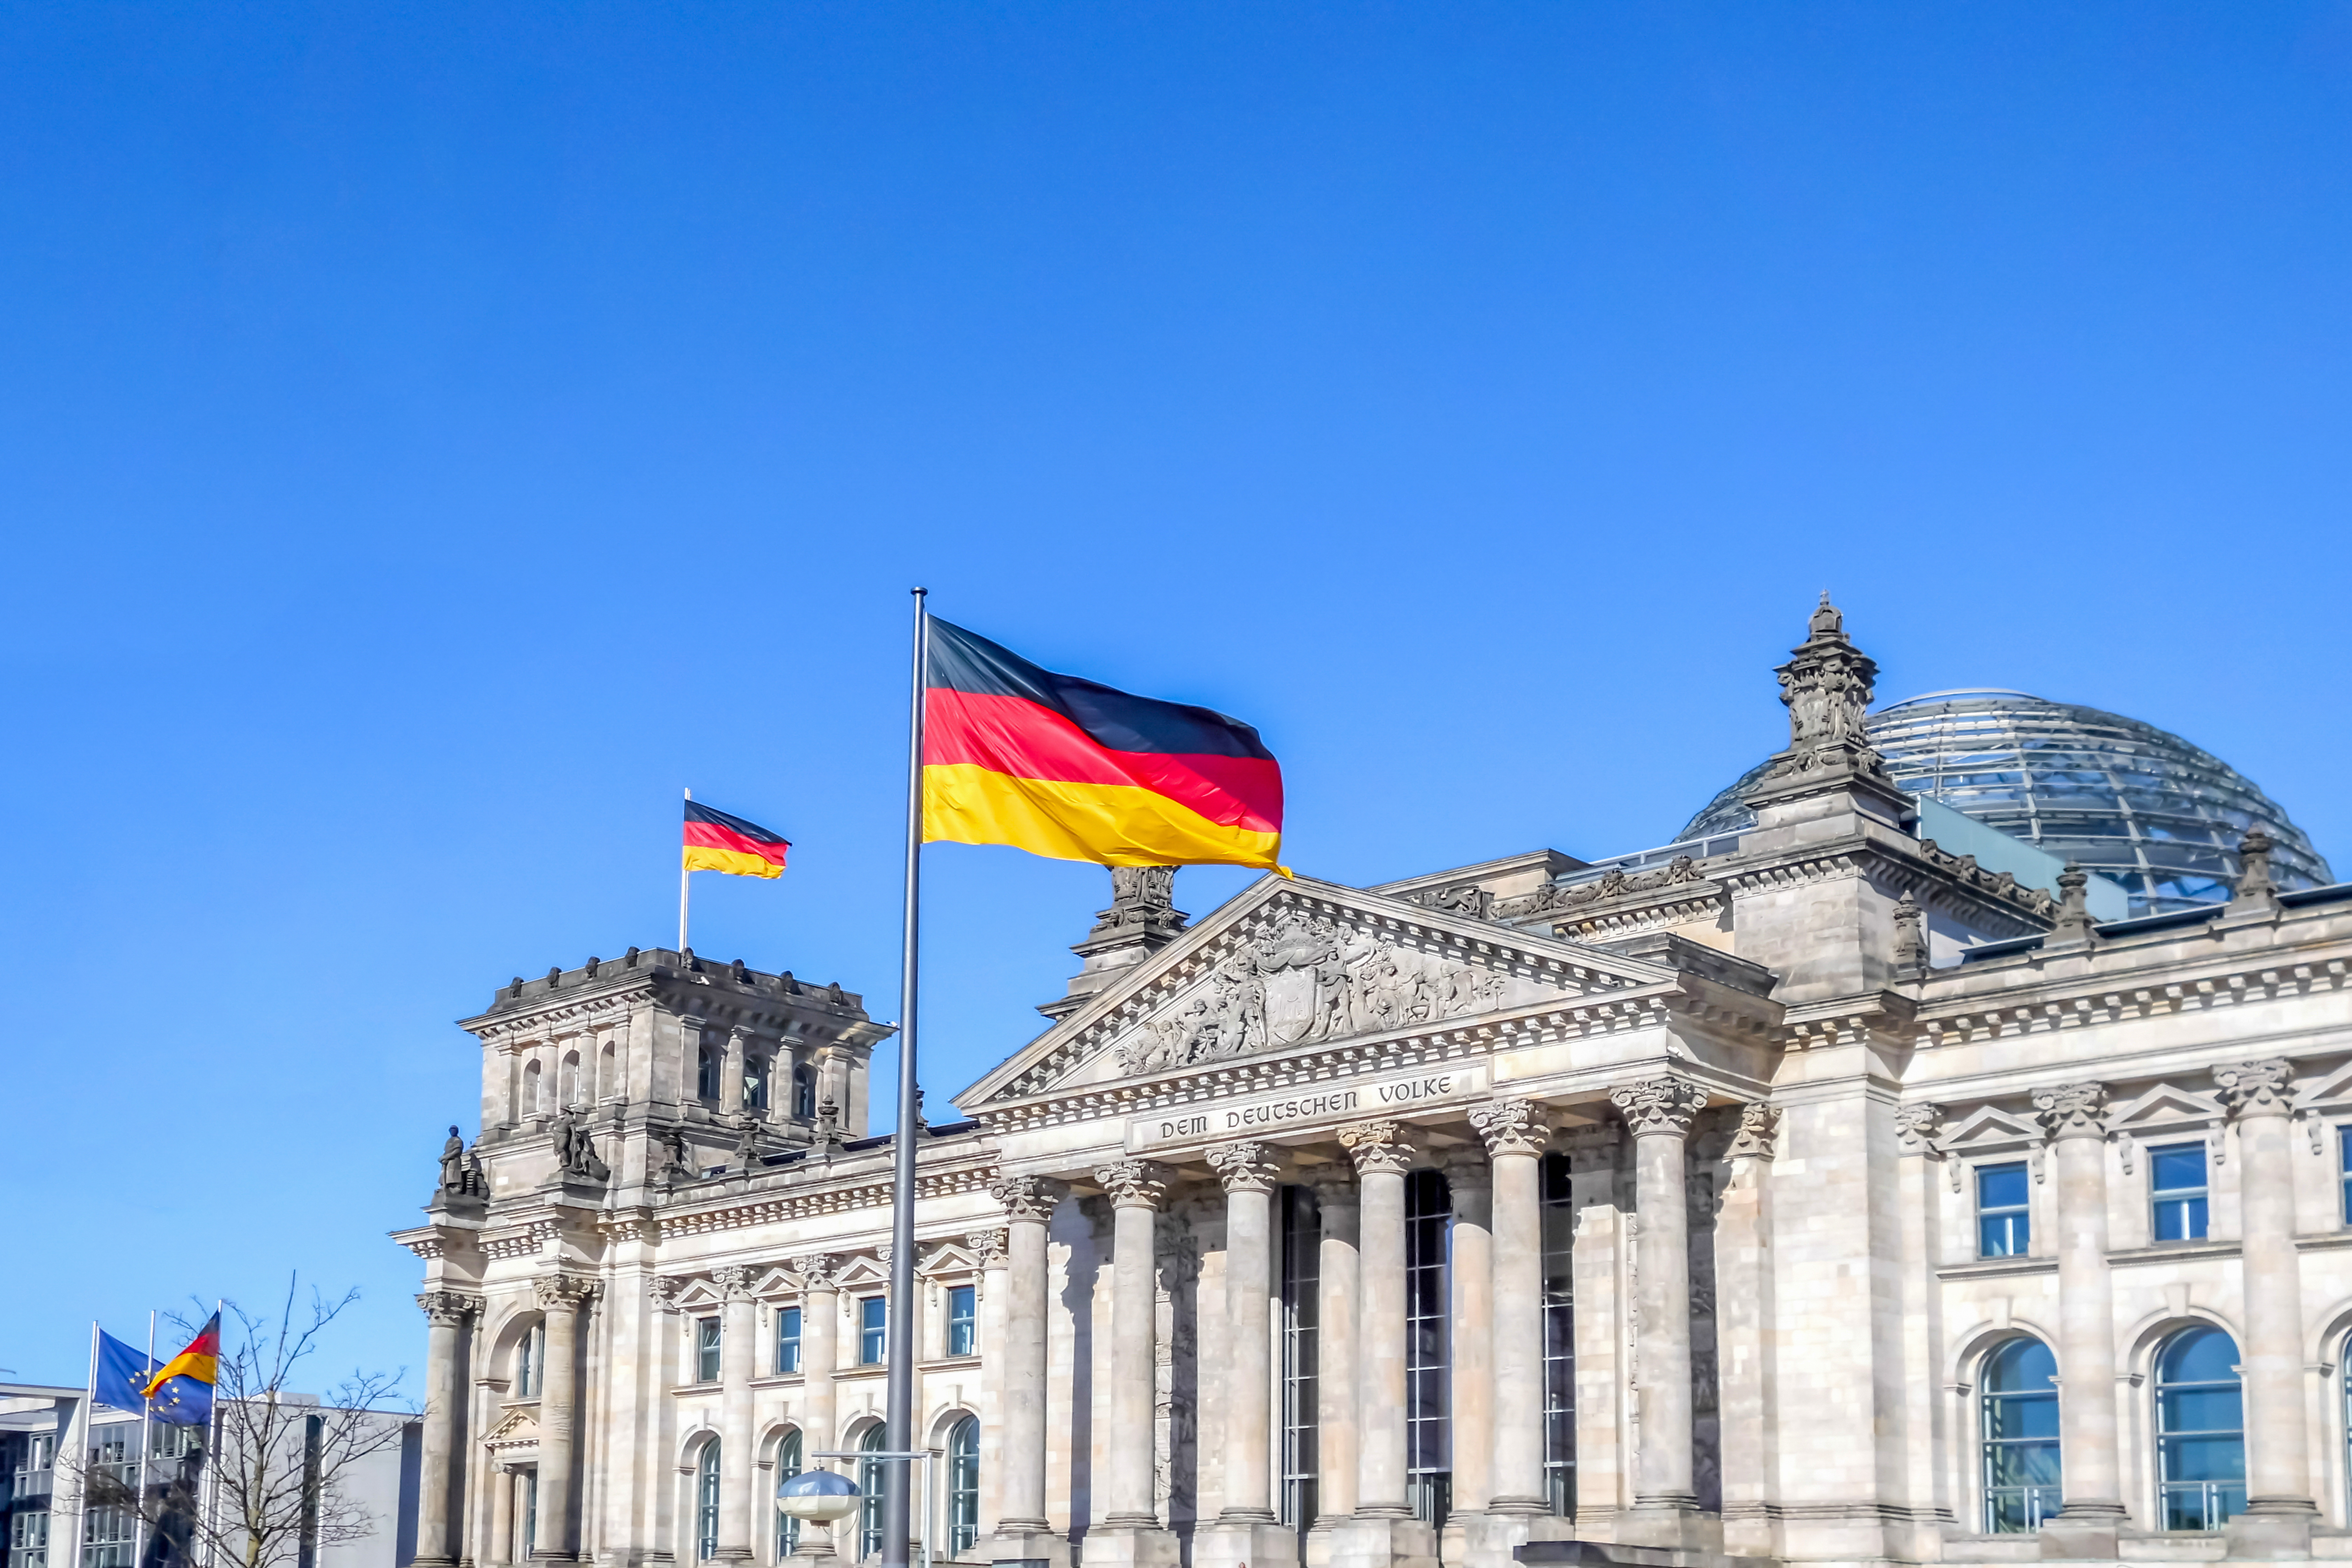 Photo drapeau allemand et parlement allemagne